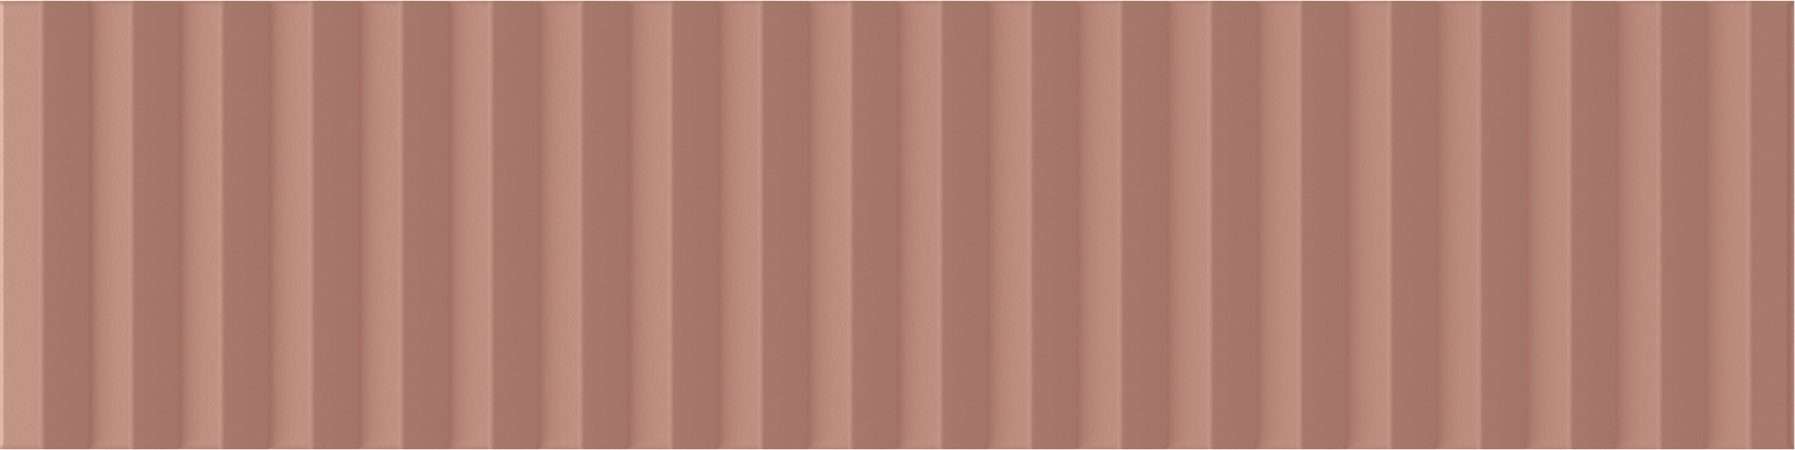 Керамическая плитка Wow Twin Peaks Med Cotto 131553, цвет терракотовый, поверхность матовая 3d (объёмная), под кирпич, 75x300